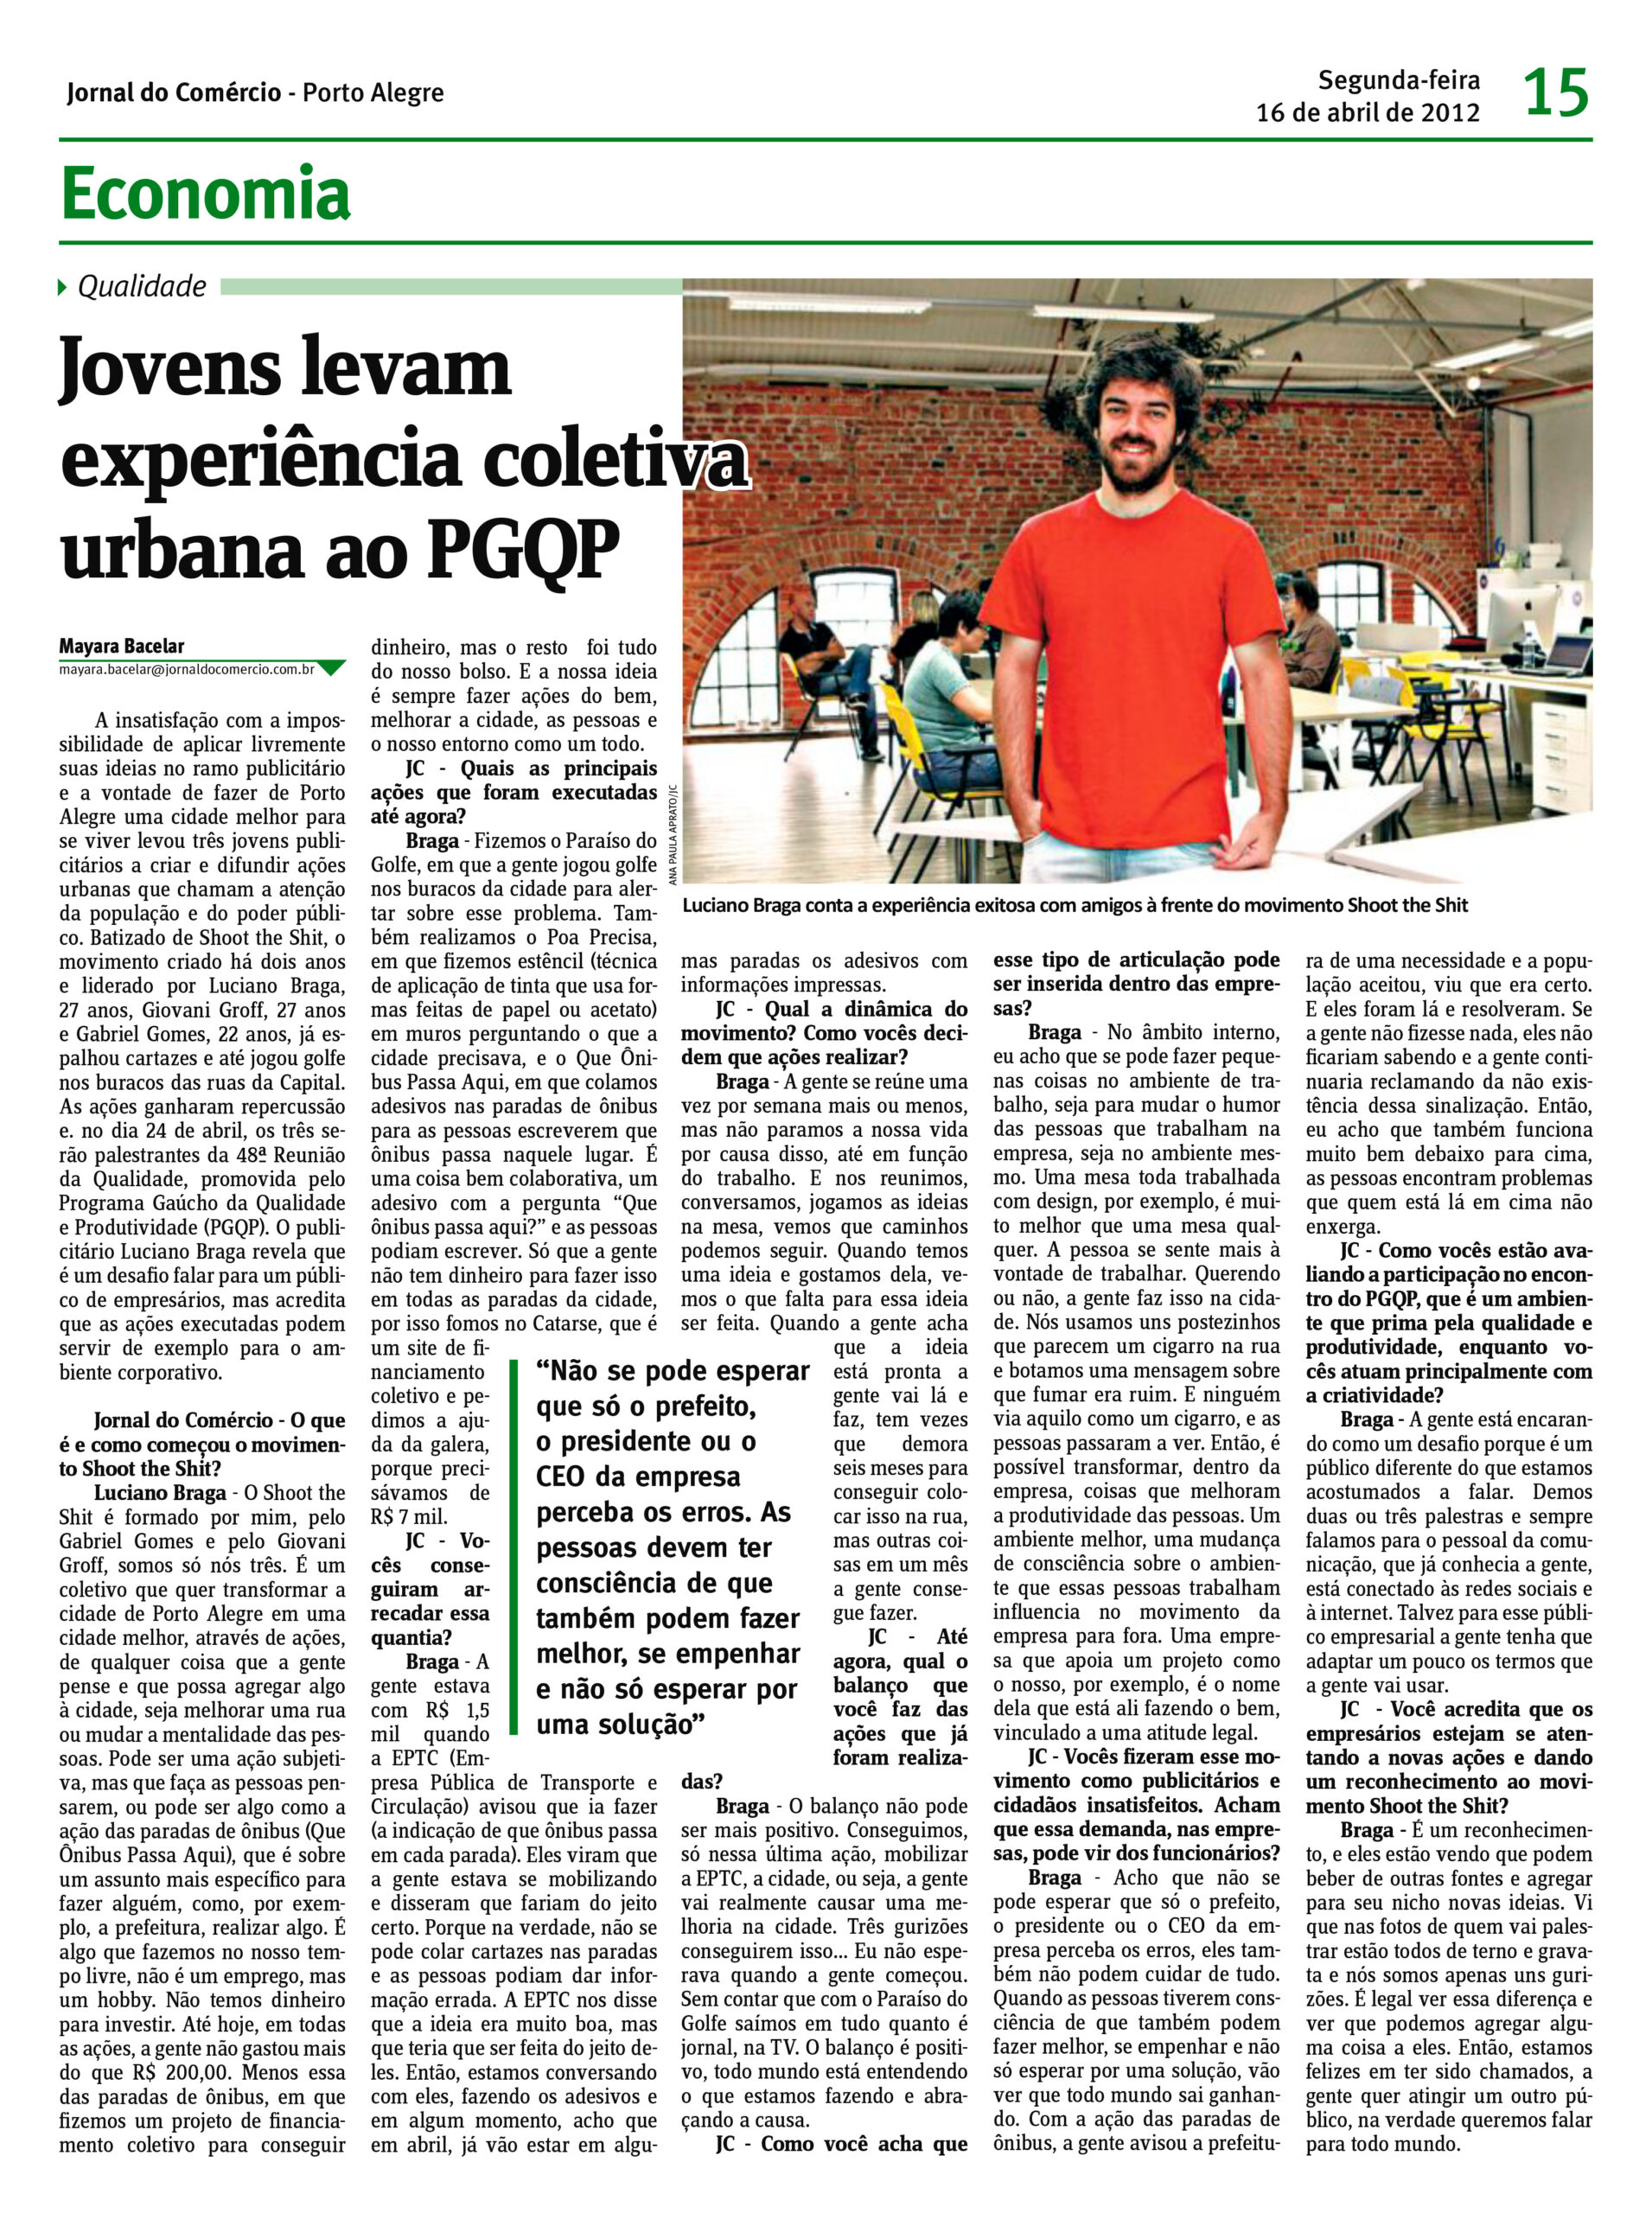 2012-Jornal-do-Comercio